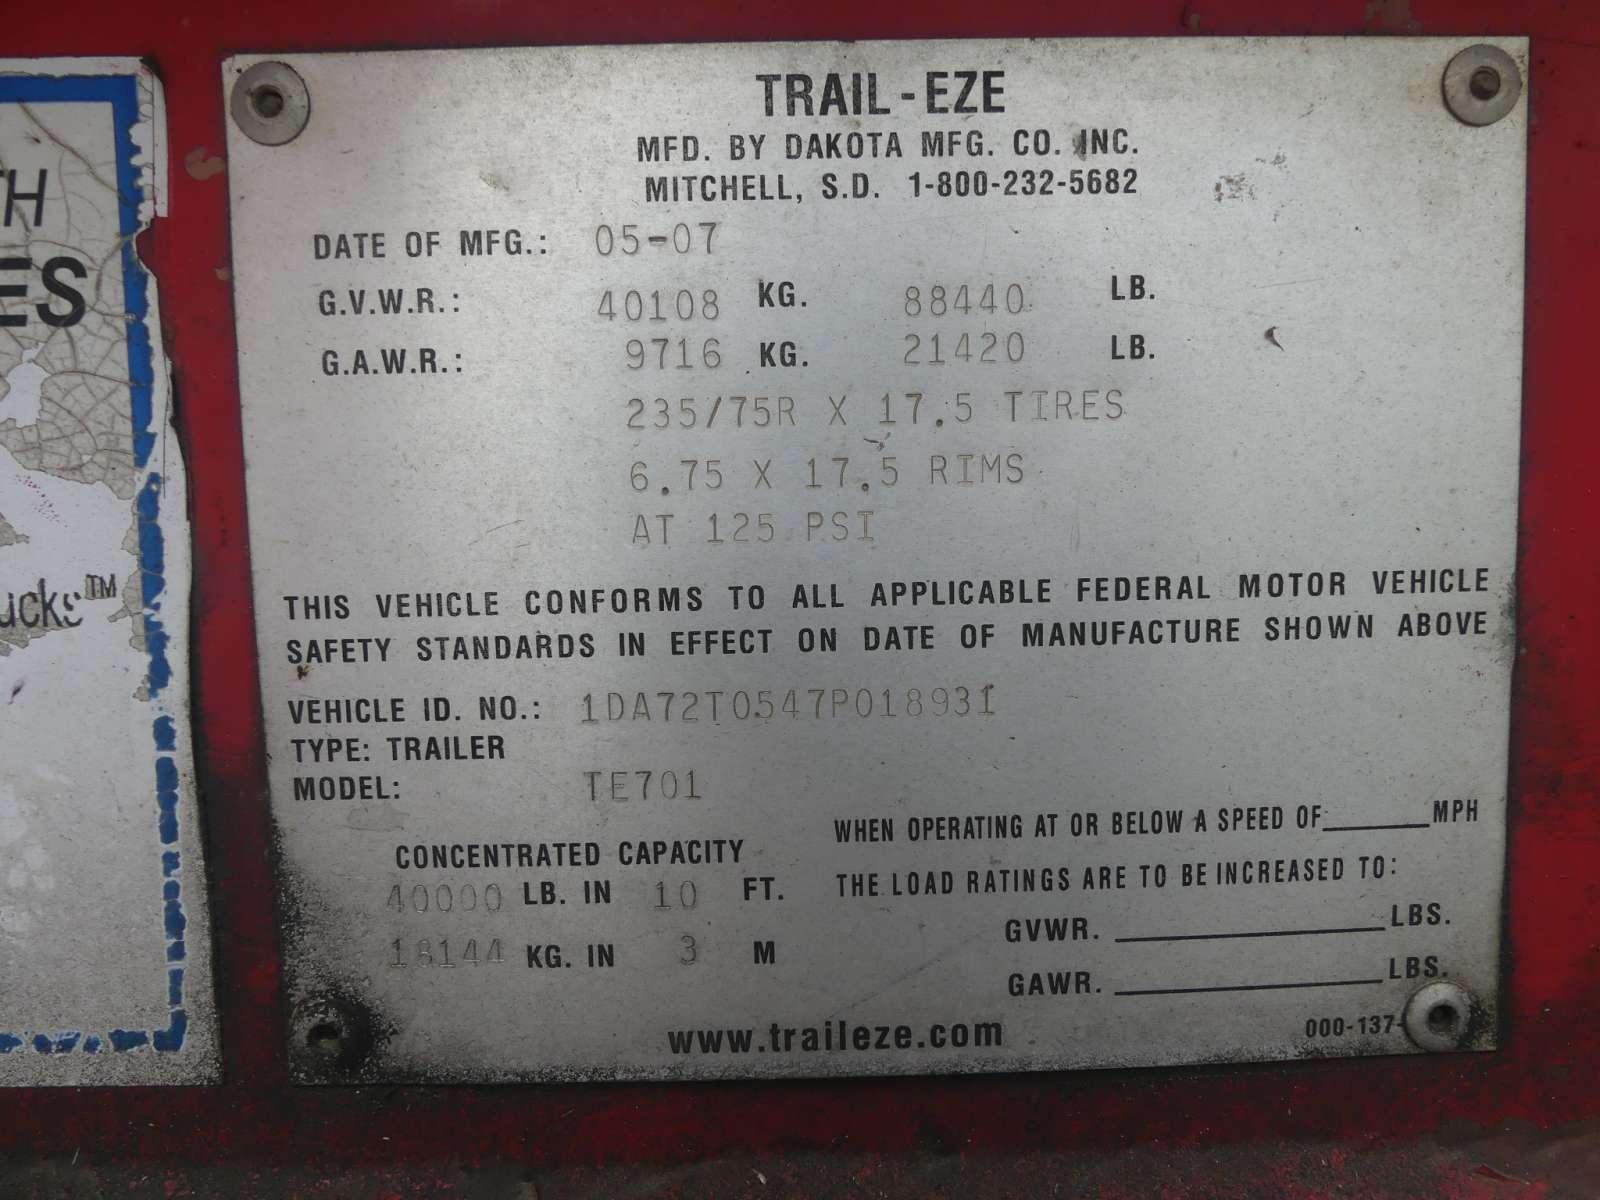 2007 Trail-Eze TE701 Hyd. Roll Trailer, s/n 1DA72T0S47P018931: T/A, Winch